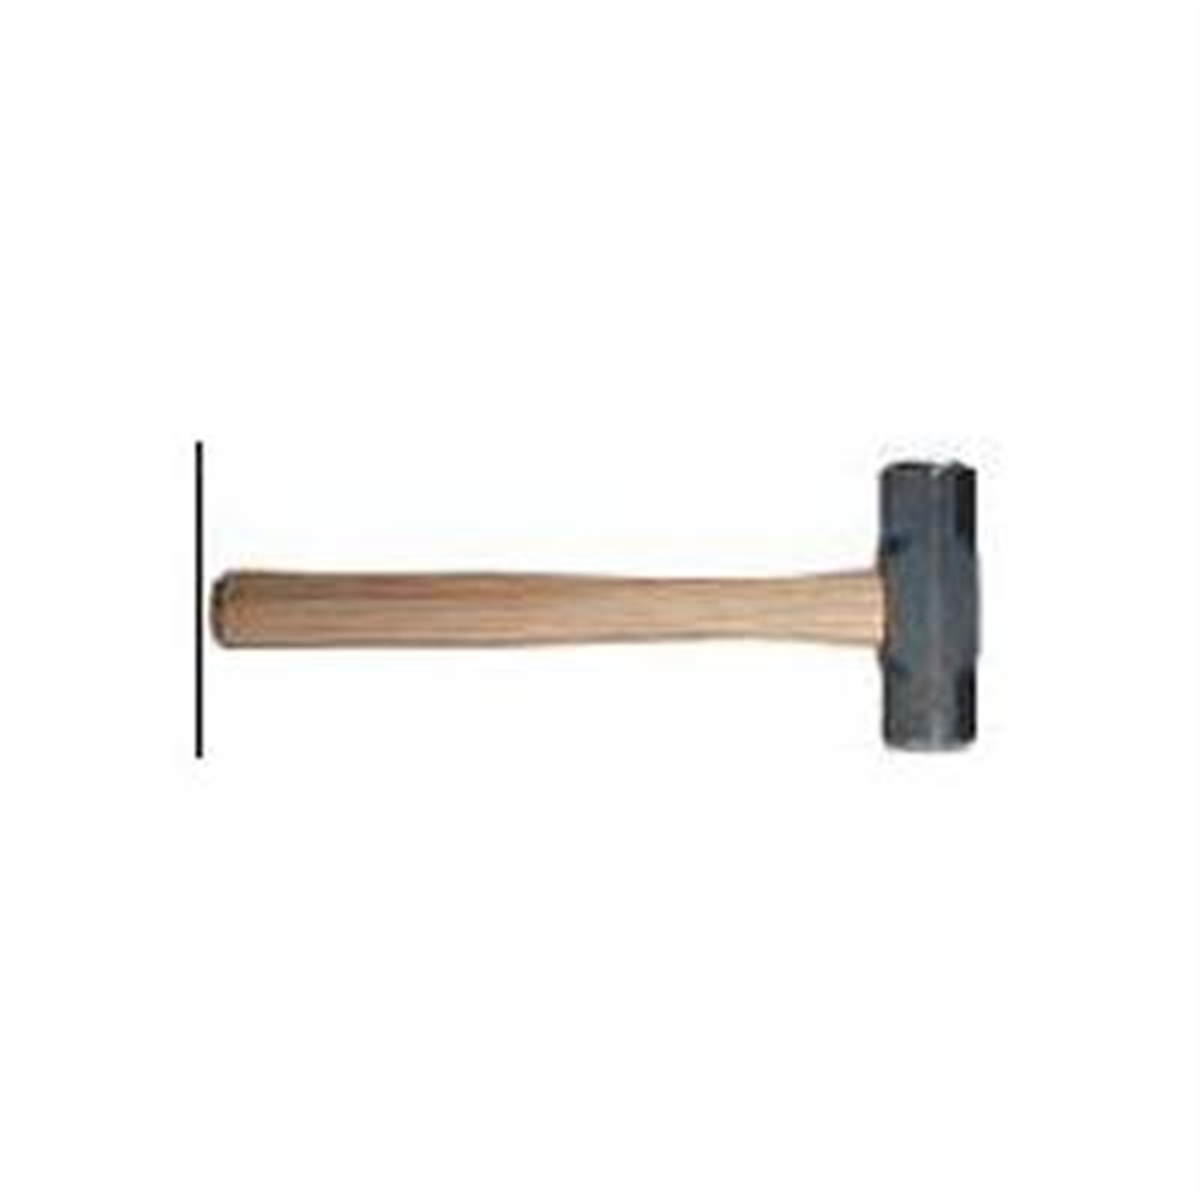 Double-Face Sledge Hammer 84H-16 - 16 Lb